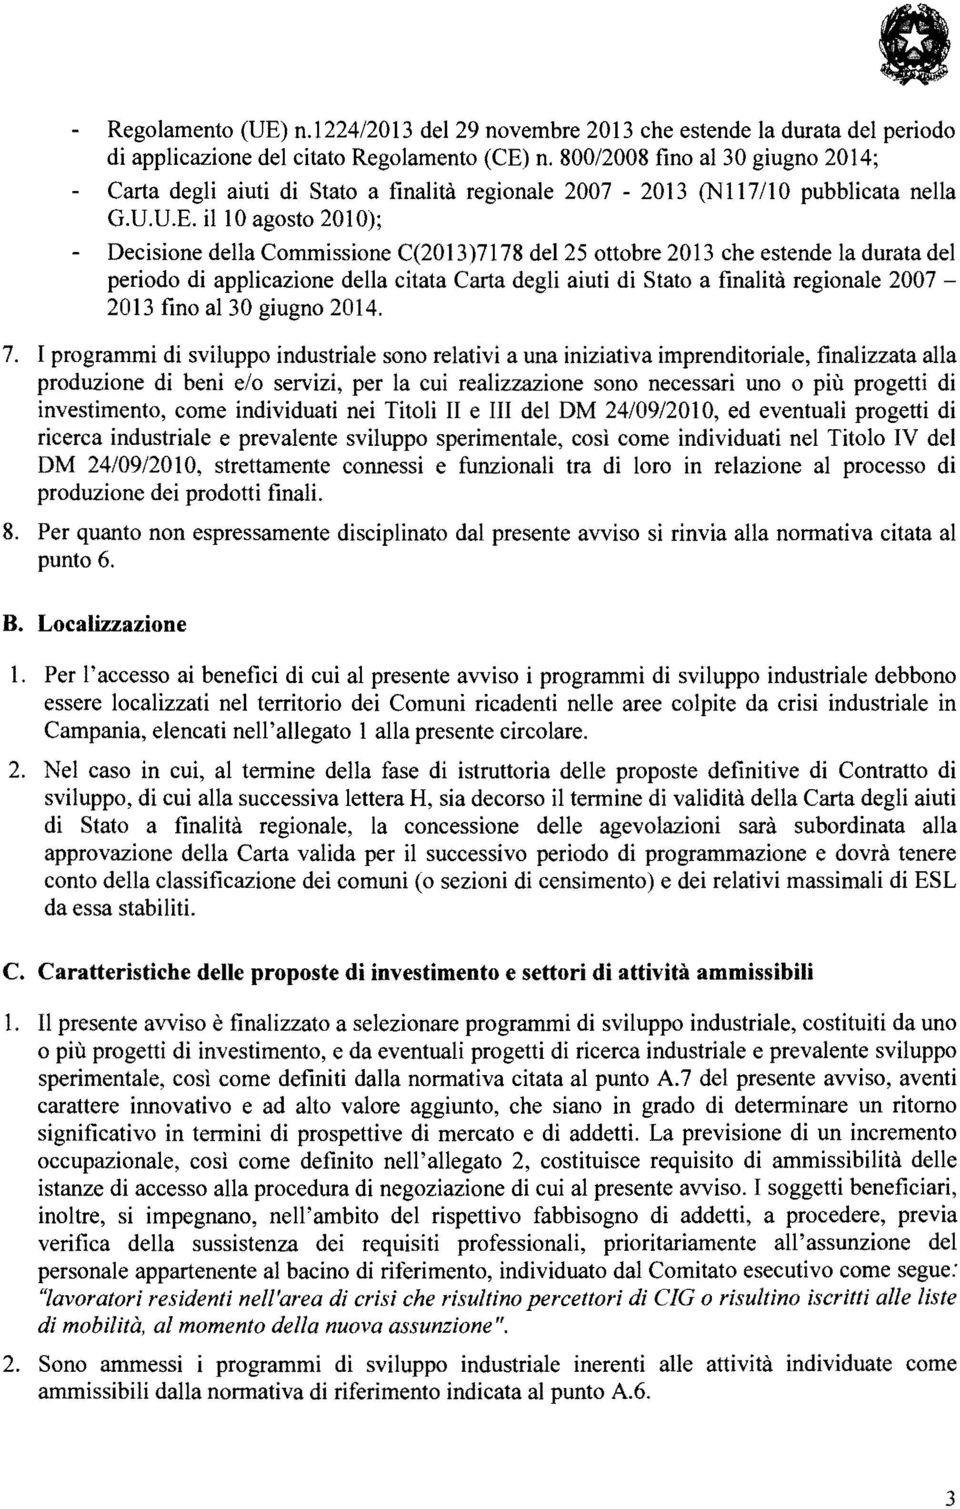 ilio agosto 2010); Decisione della Commissione C(2013)7178 del 25 ottobre 2013 che estende la durata del periodo di applicazione della citata Carta degli aiuti di Stato a finalità regionale 2007 2013